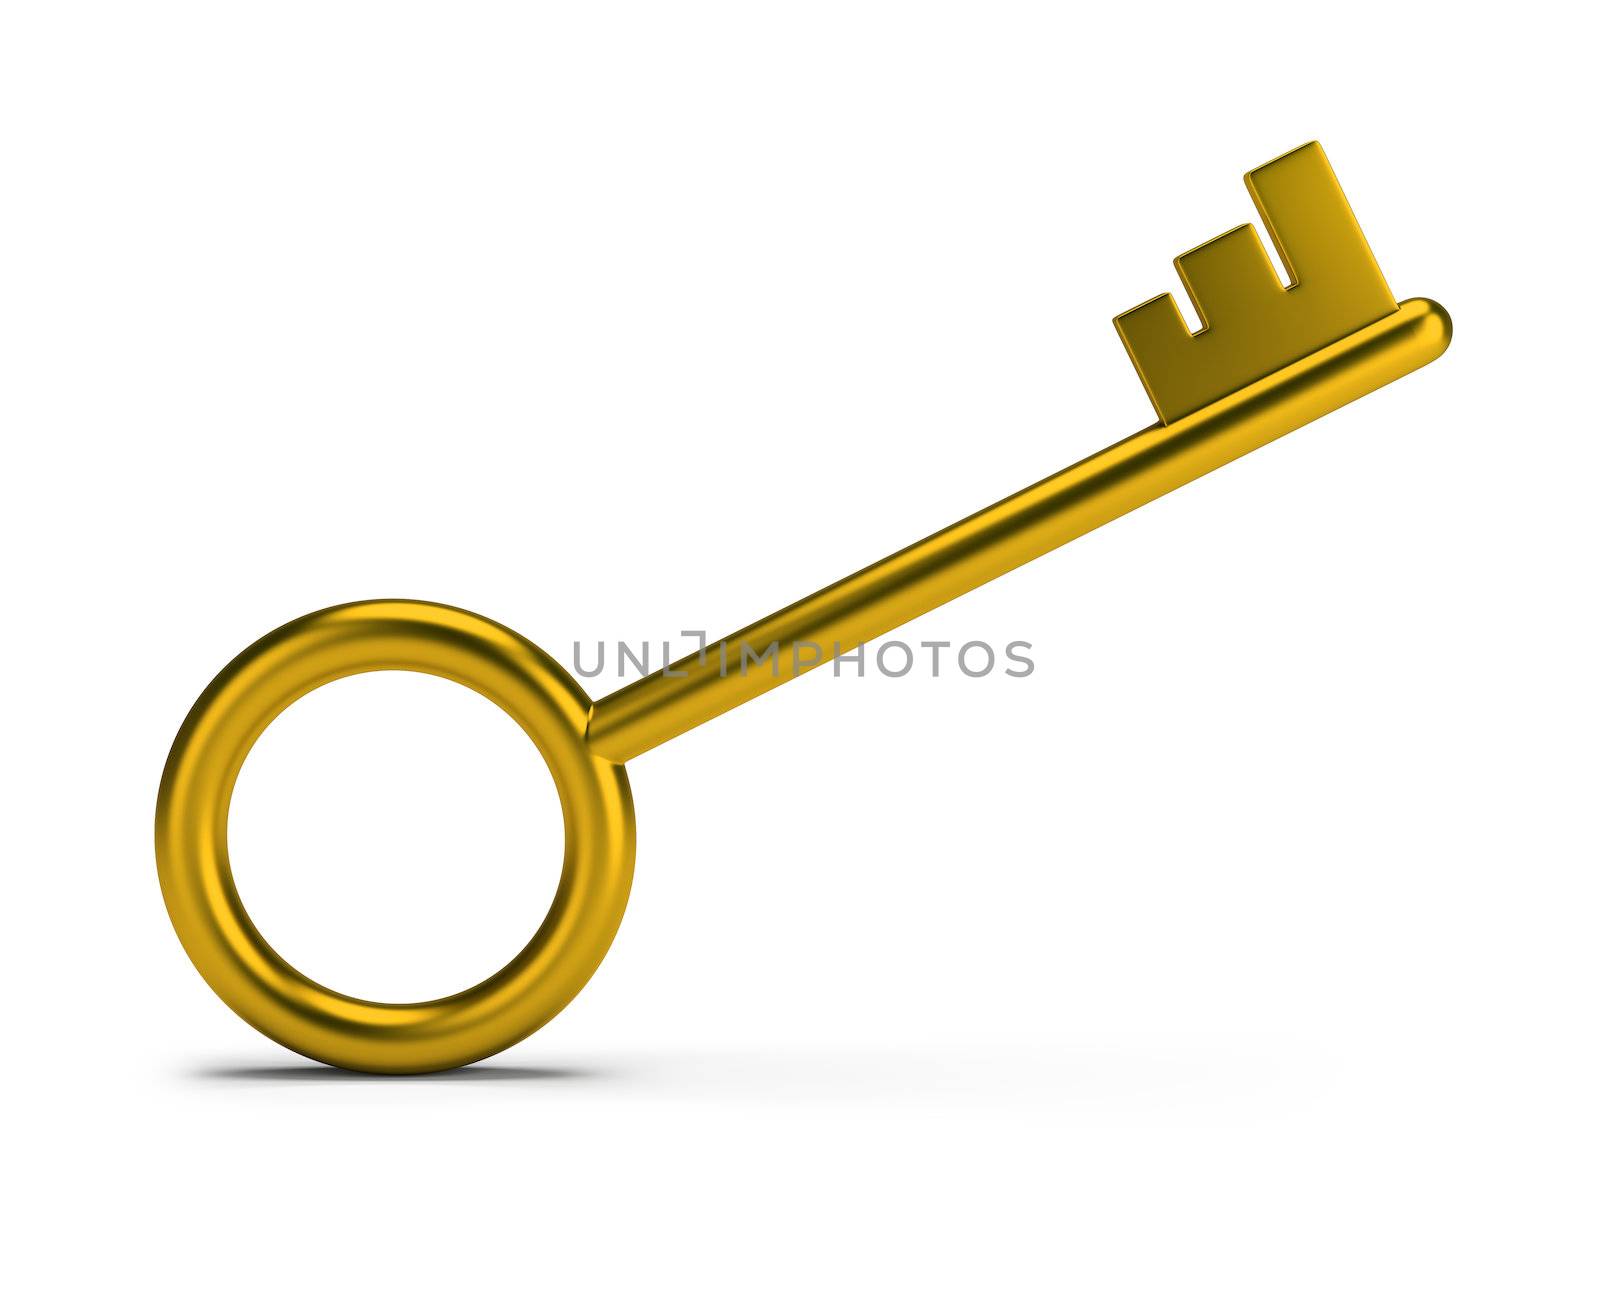 Stylish gold key. 3d image. White background.